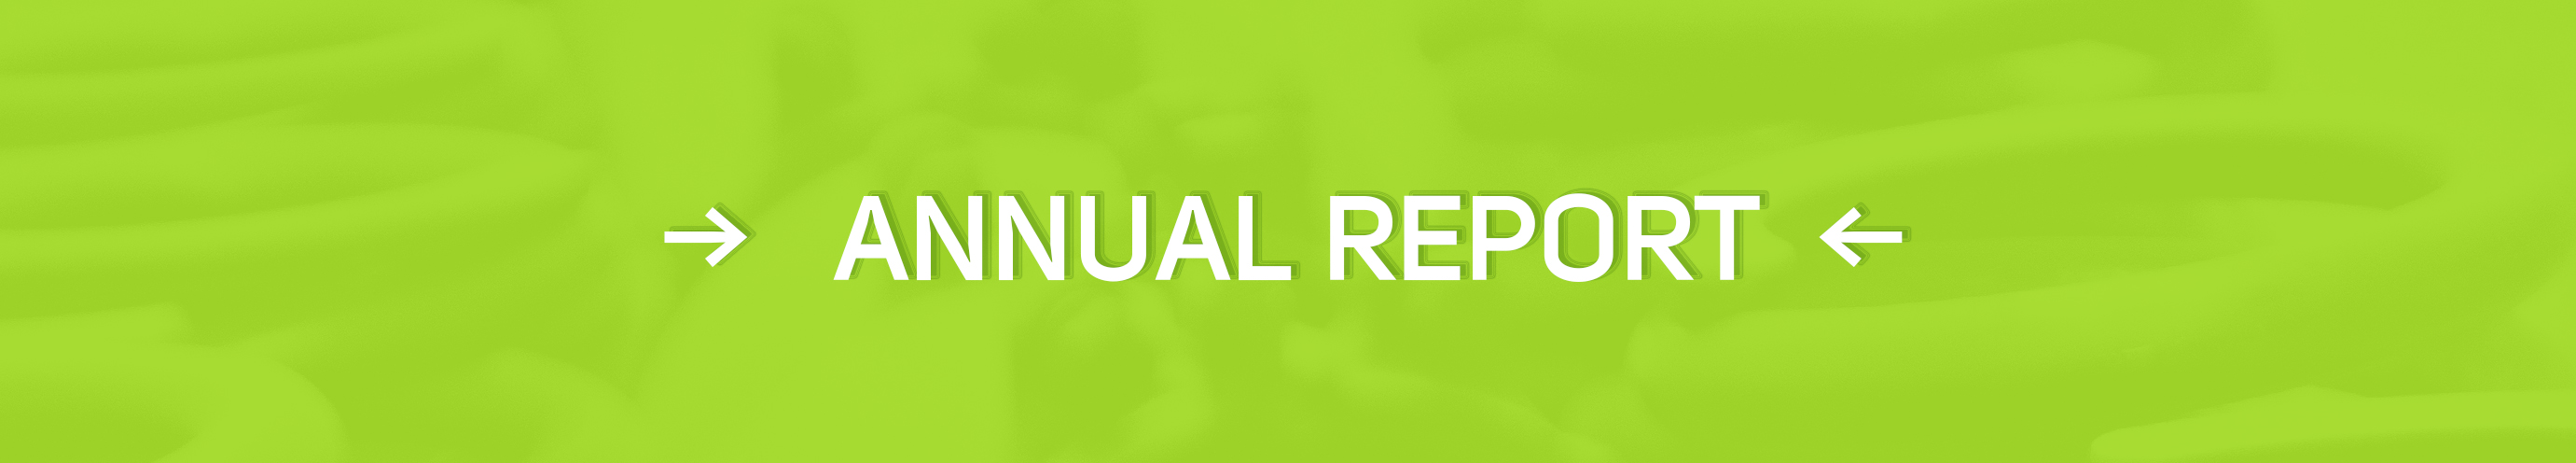 annual report - button